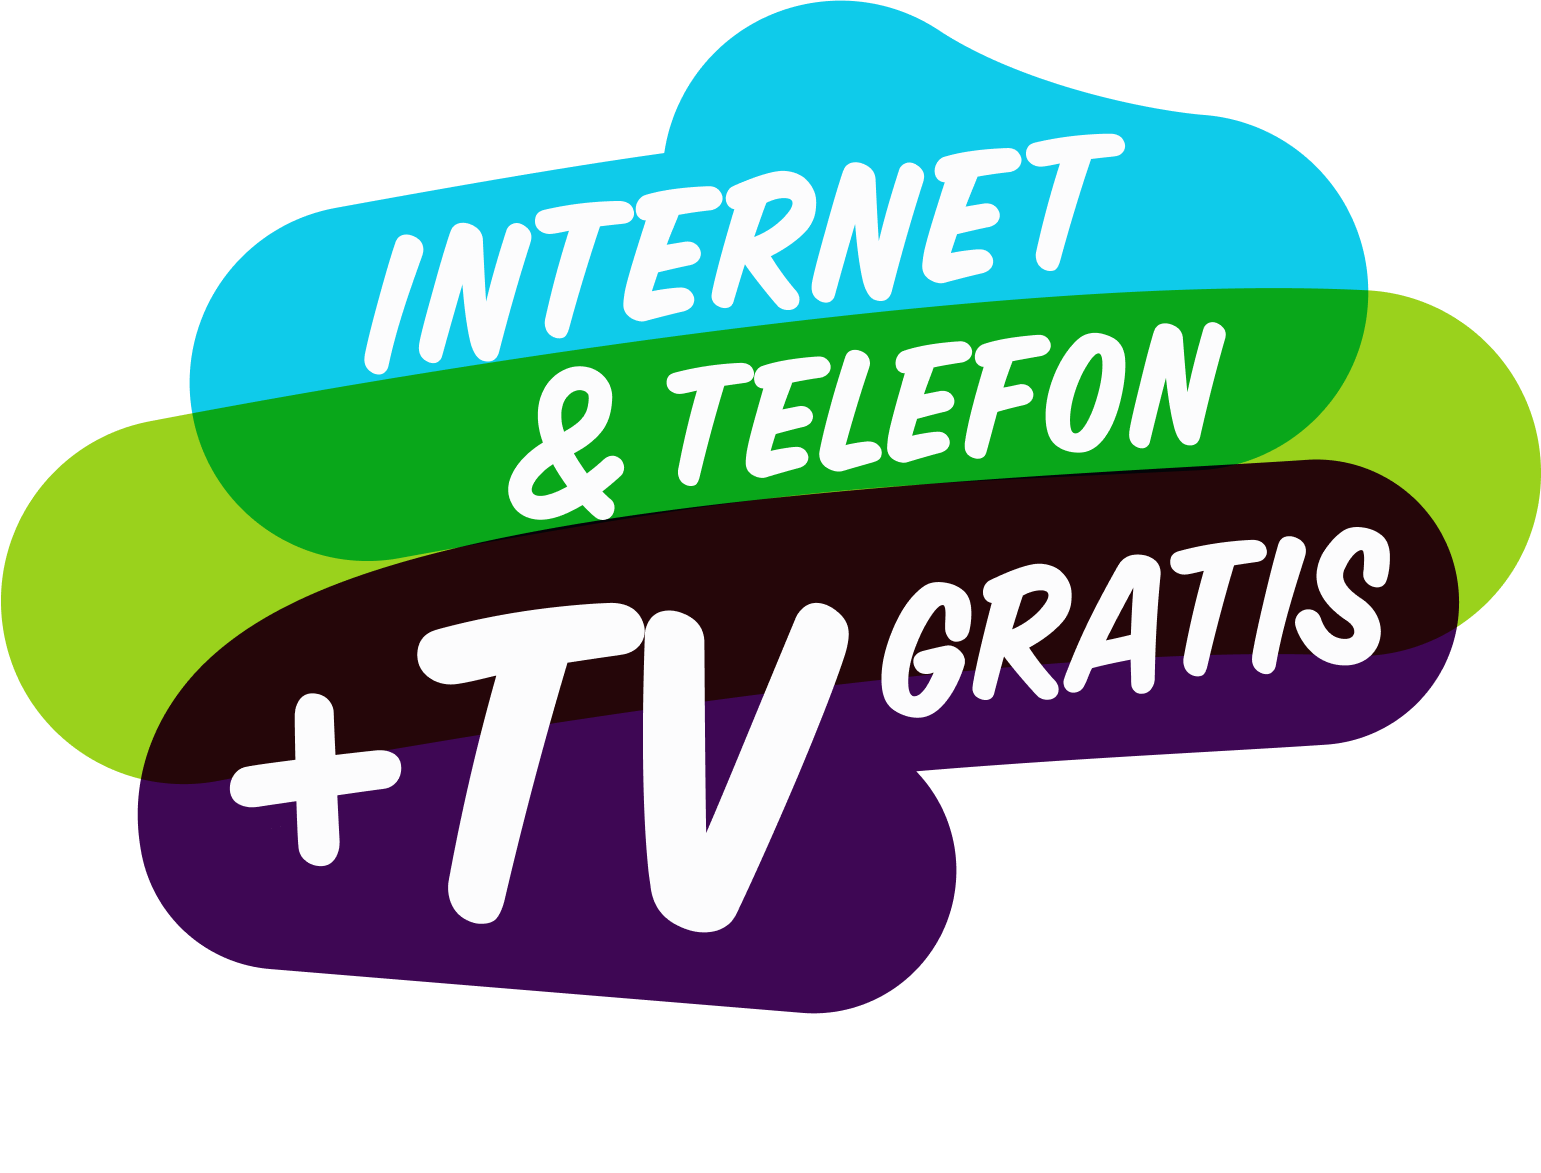 Drei für Zwei Aktion: Internet & Telefon + TV gratis